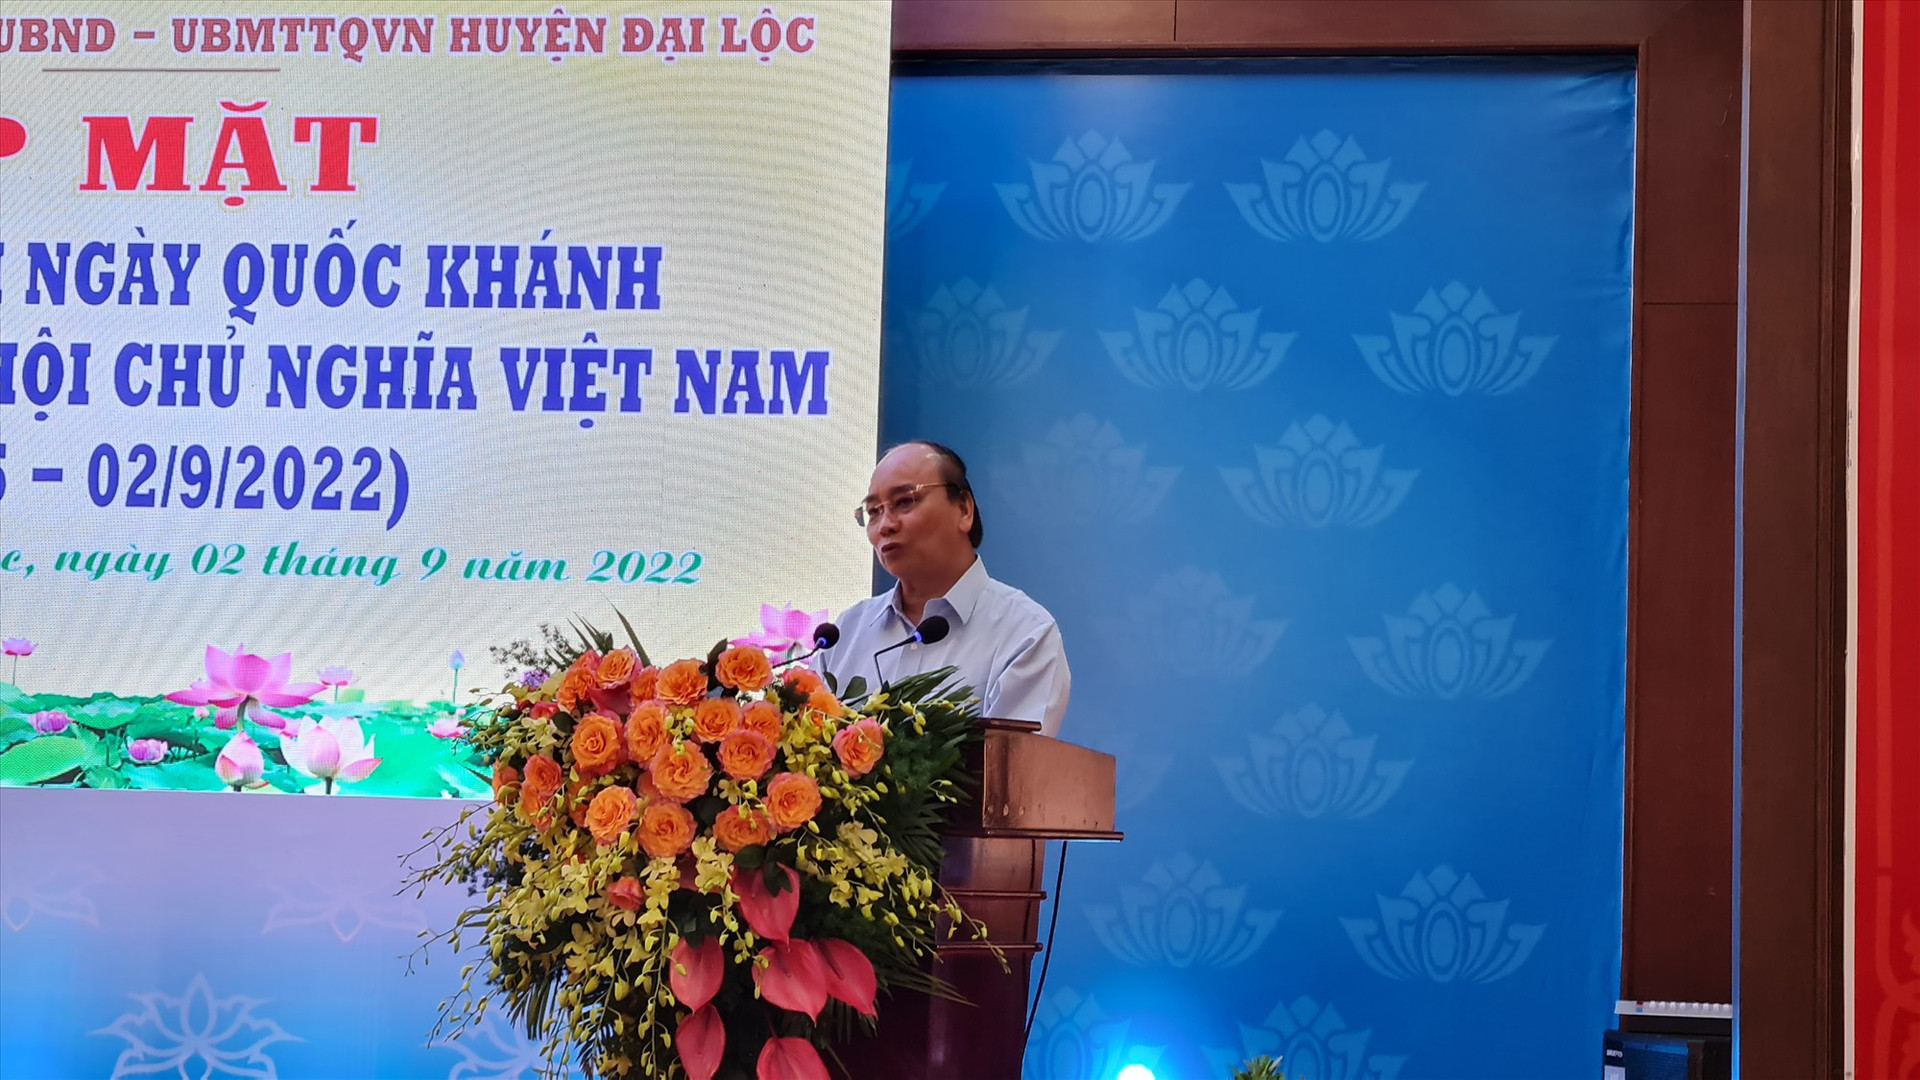 Chủ tịch nước Nguyễn Xuân Phúc phát biểu tại buổi gặp mặt. Ảnh: HOÀNG LIÊN